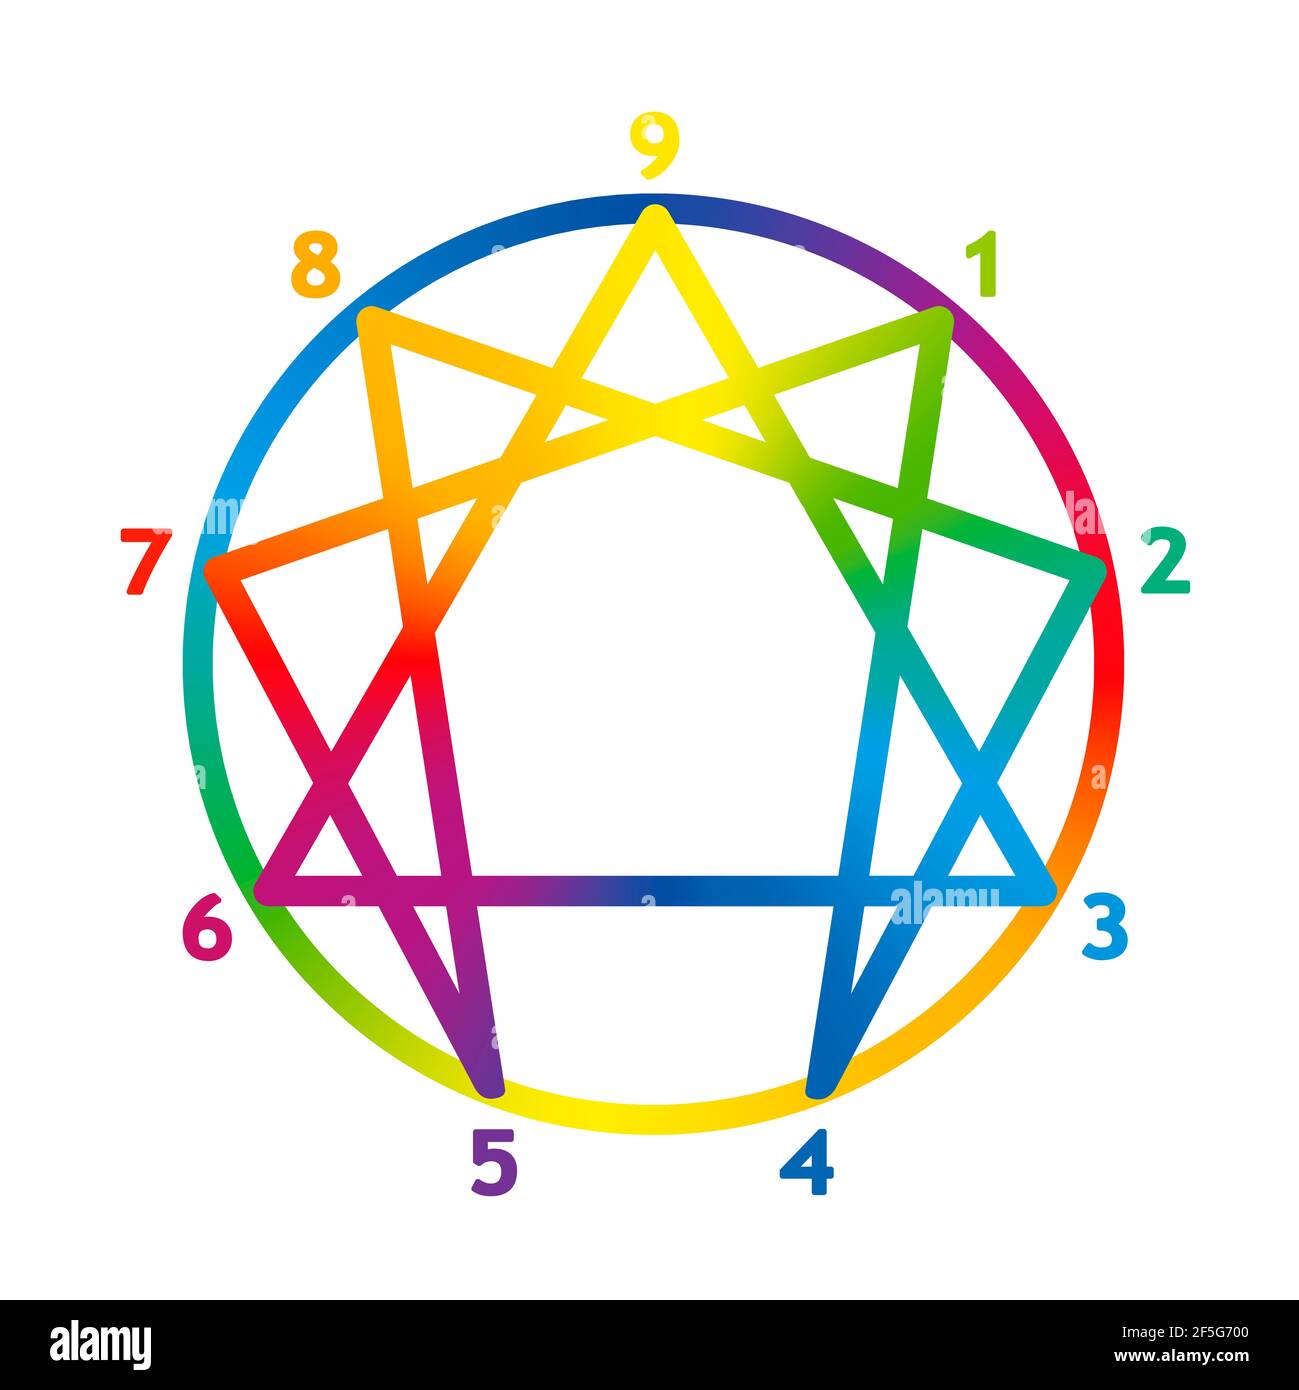 Logo enneatypes colorato, simbolo enneagramma di colore arcobaleno con numeri da uno a nove per i diversi tipi di personalità. Gradiente arcobaleno. Foto Stock